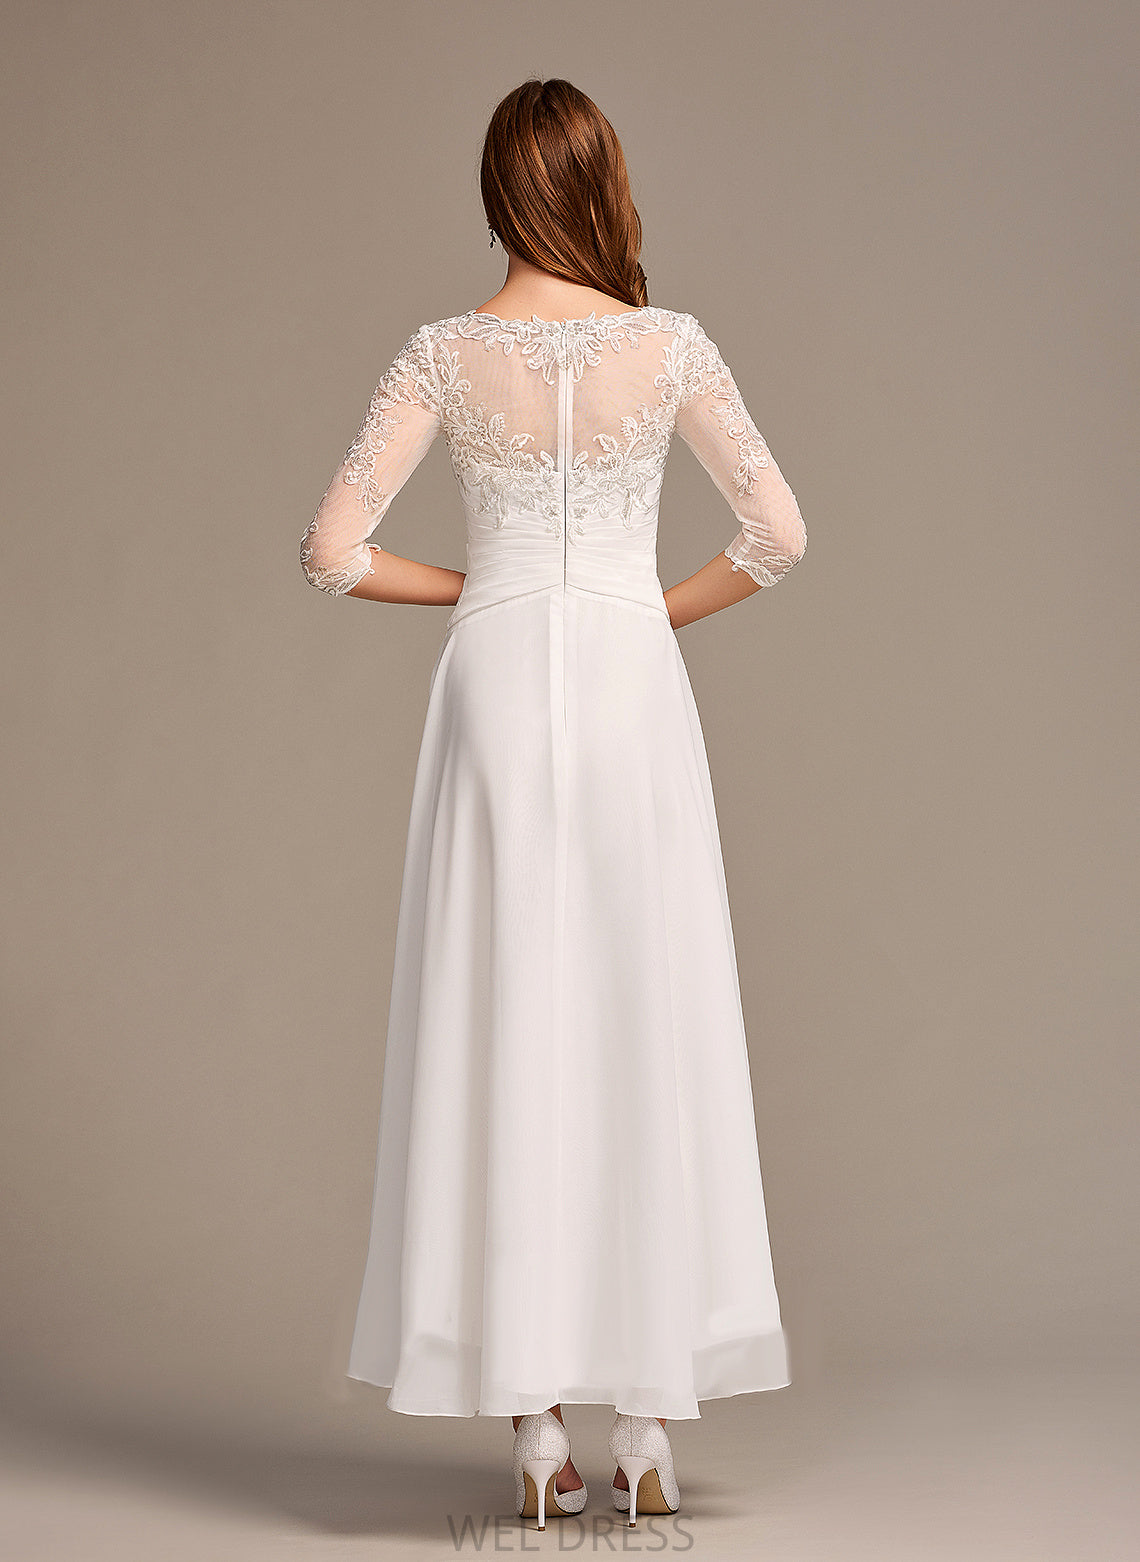 Lace Wedding Asymmetrical Dress Wedding Dresses Illusion A-Line Chiffon Lilia With